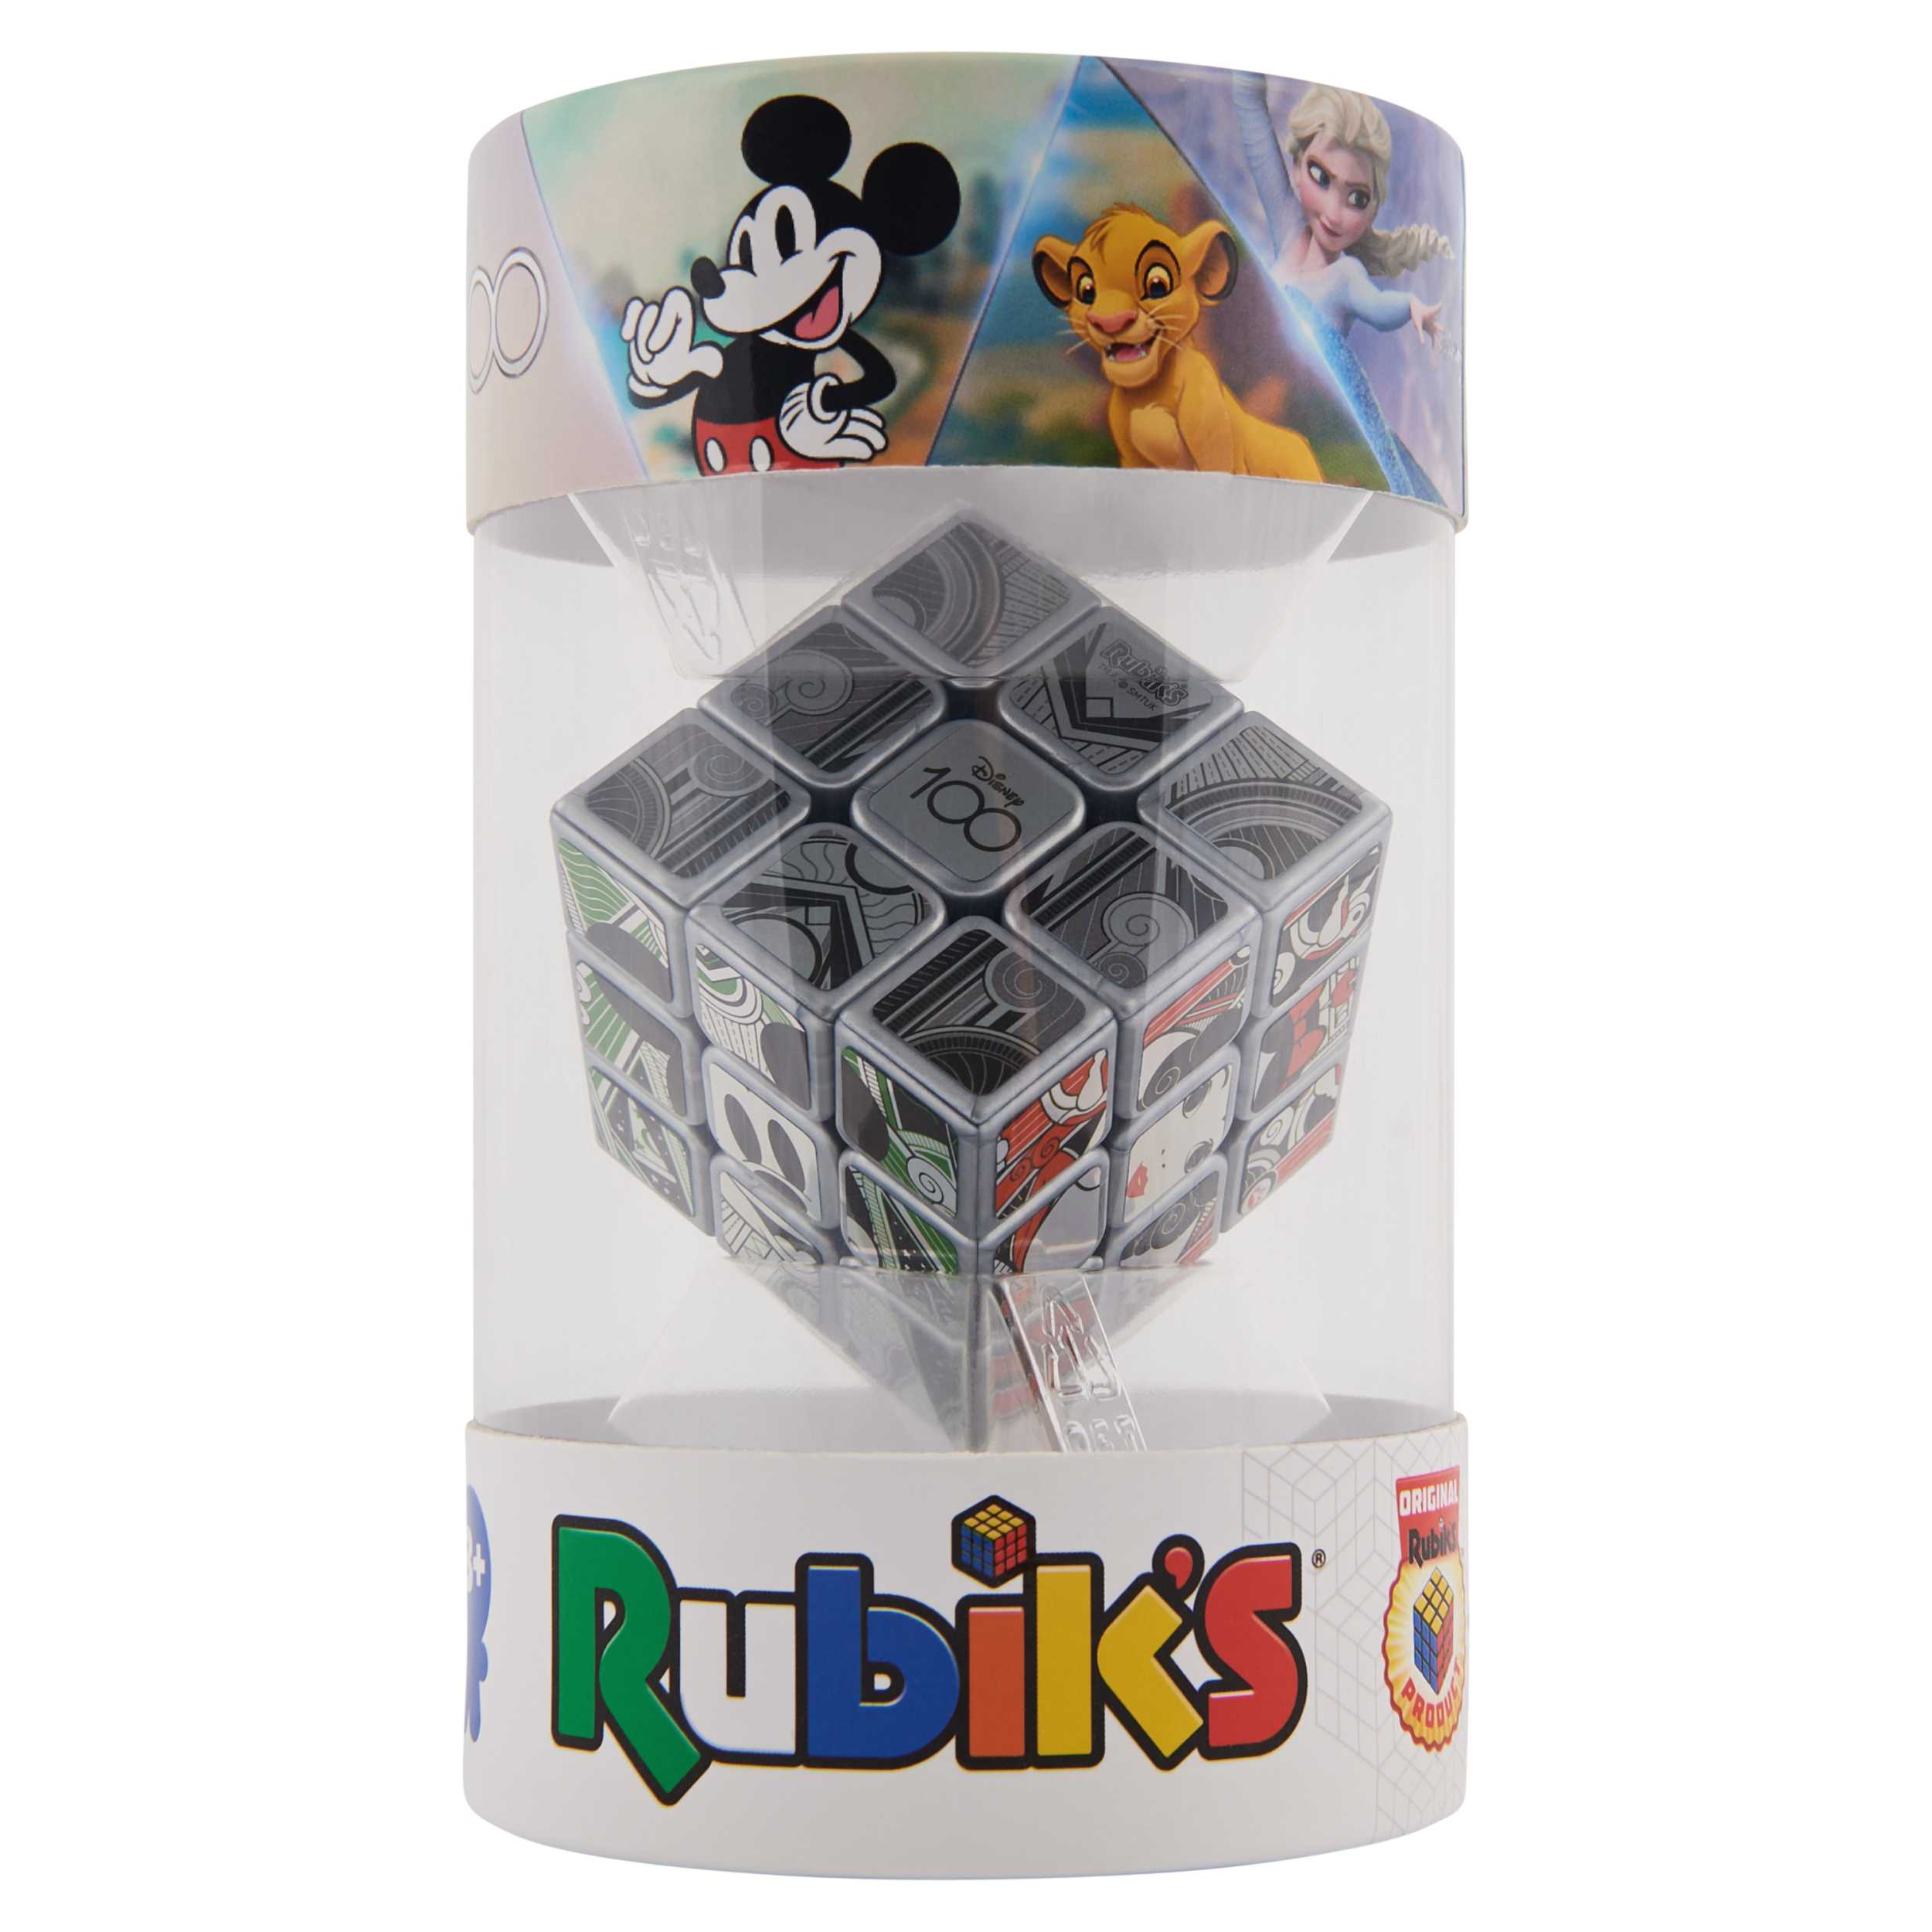 Original Rubik